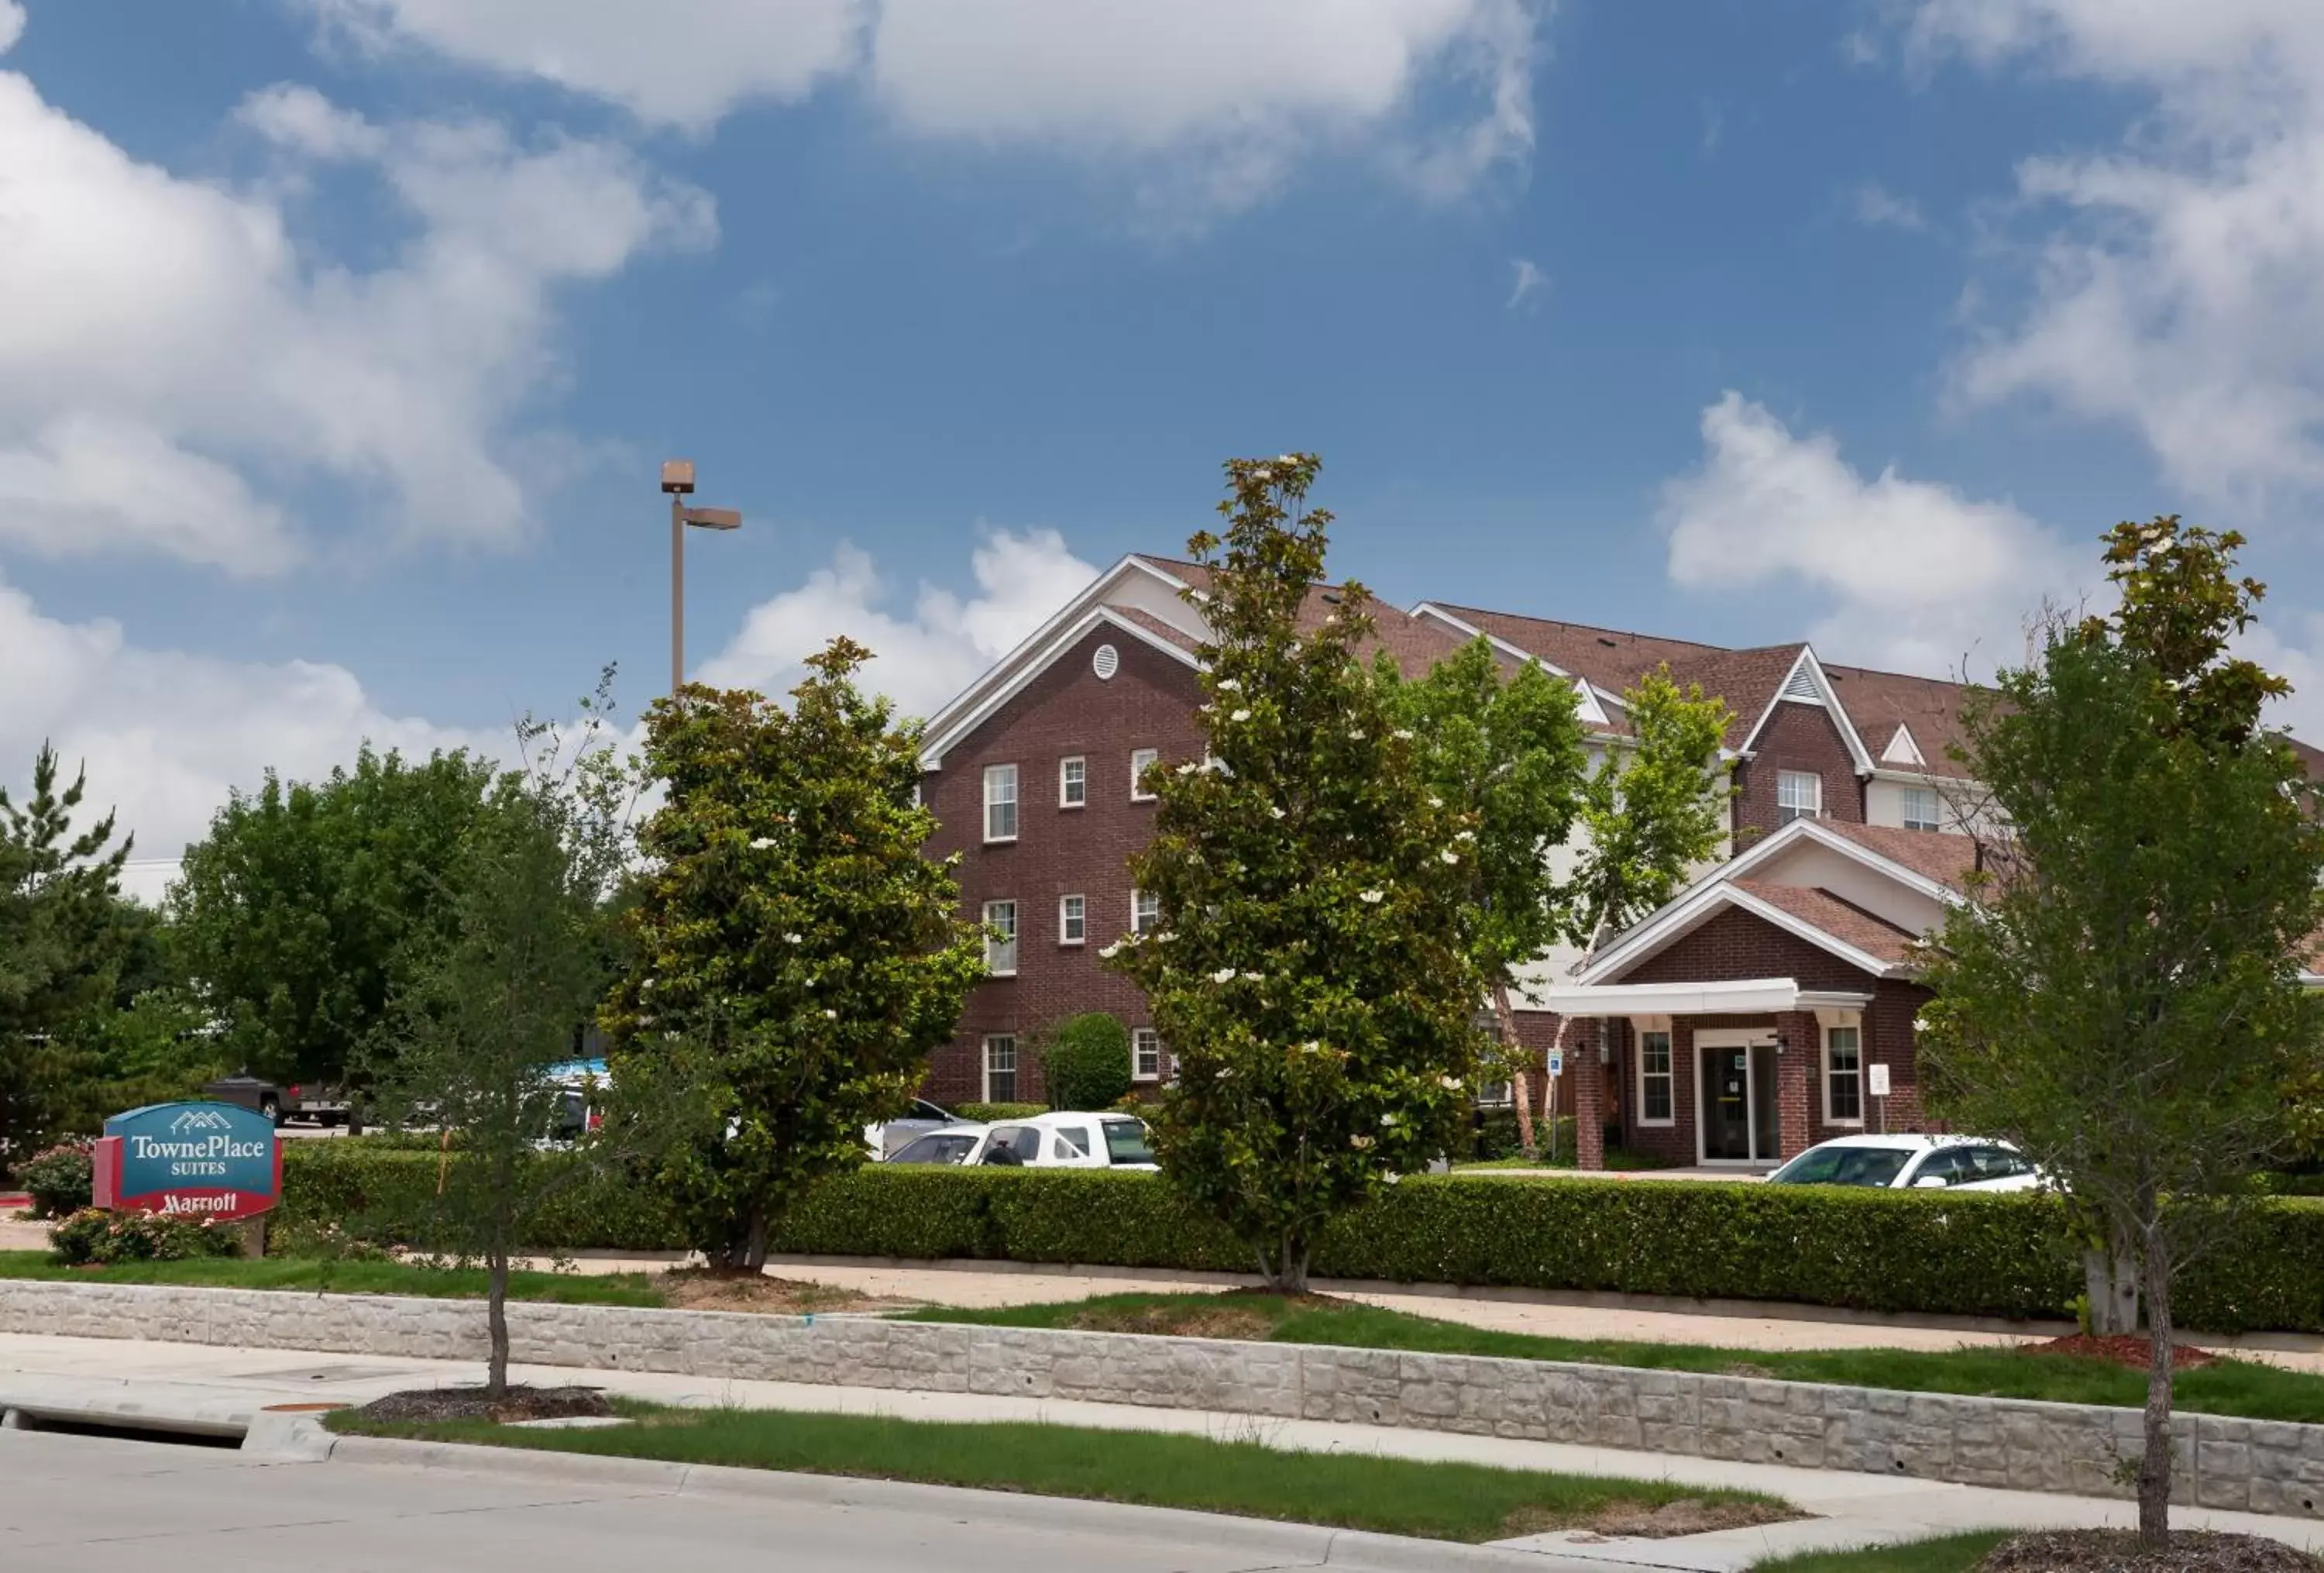 Facade/entrance, Property Building in TownePlace Suites Dallas Arlington North